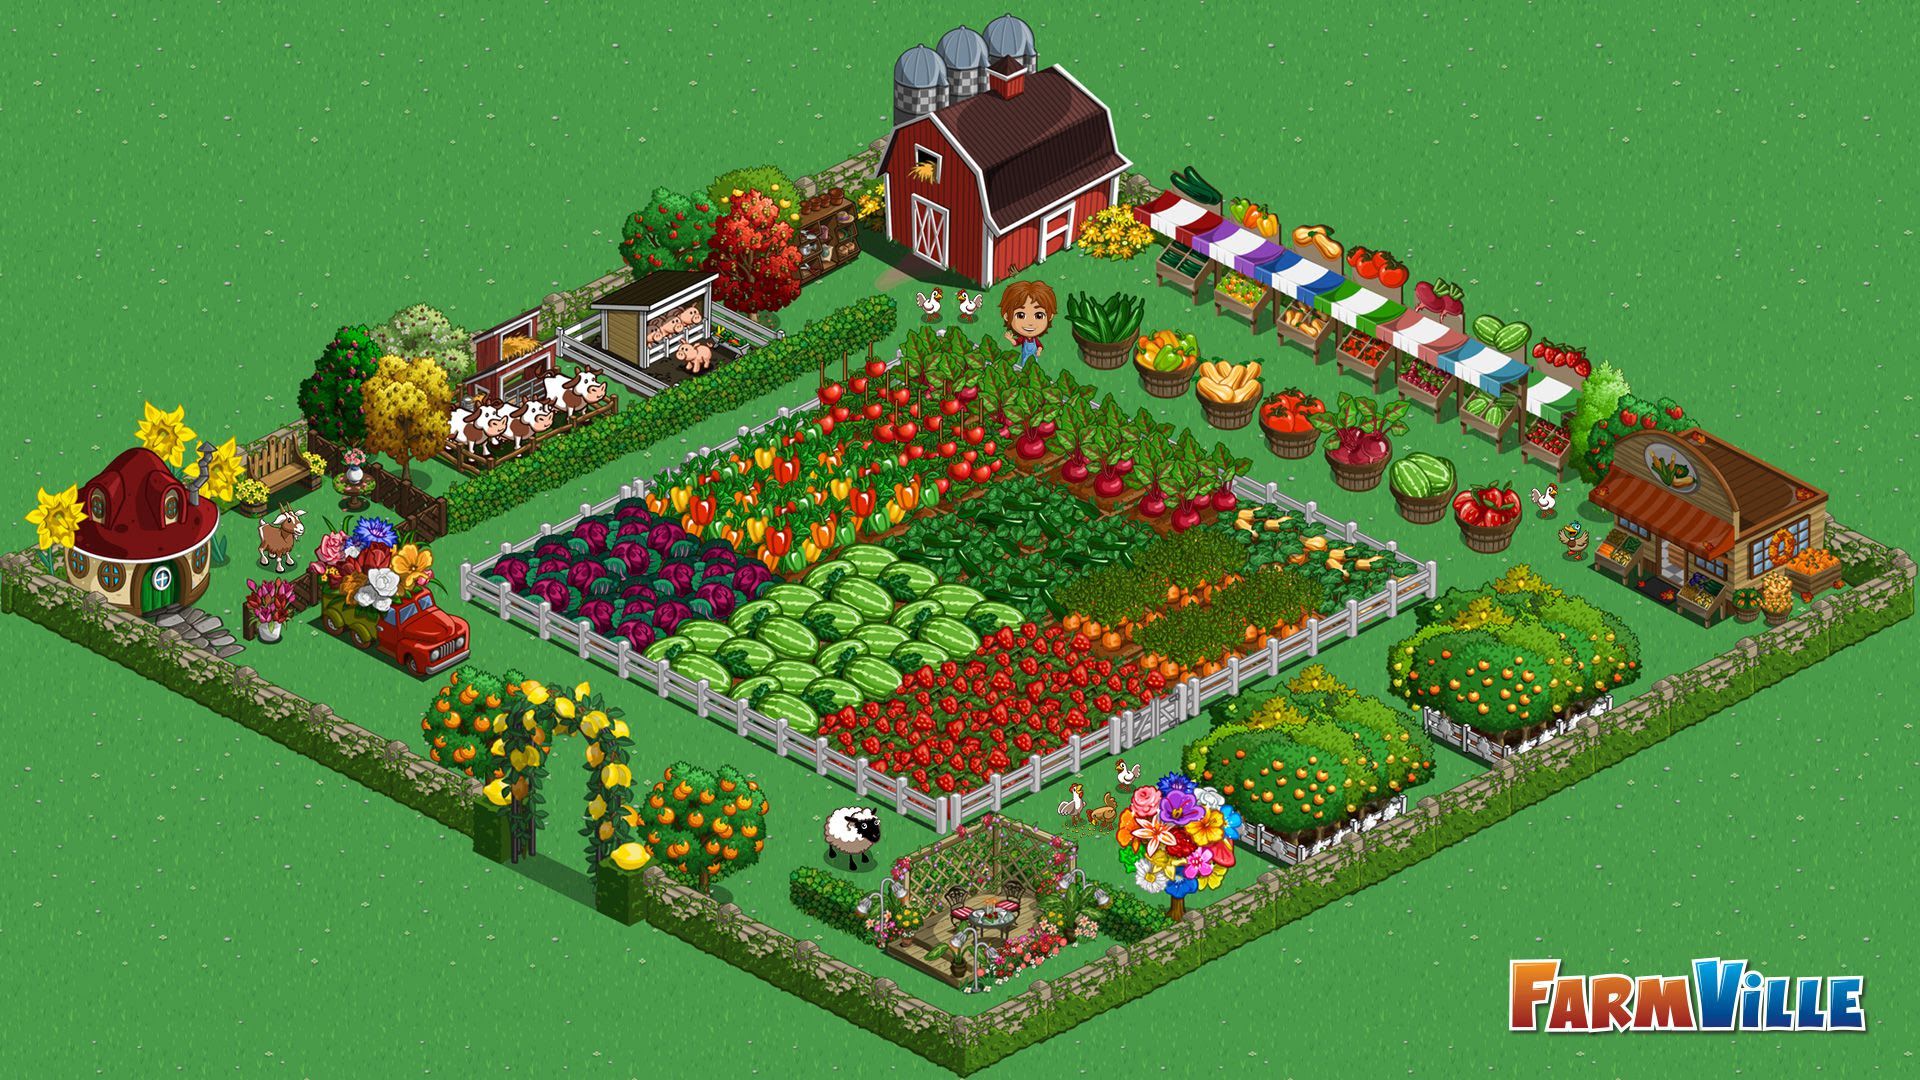 Farmville graphic